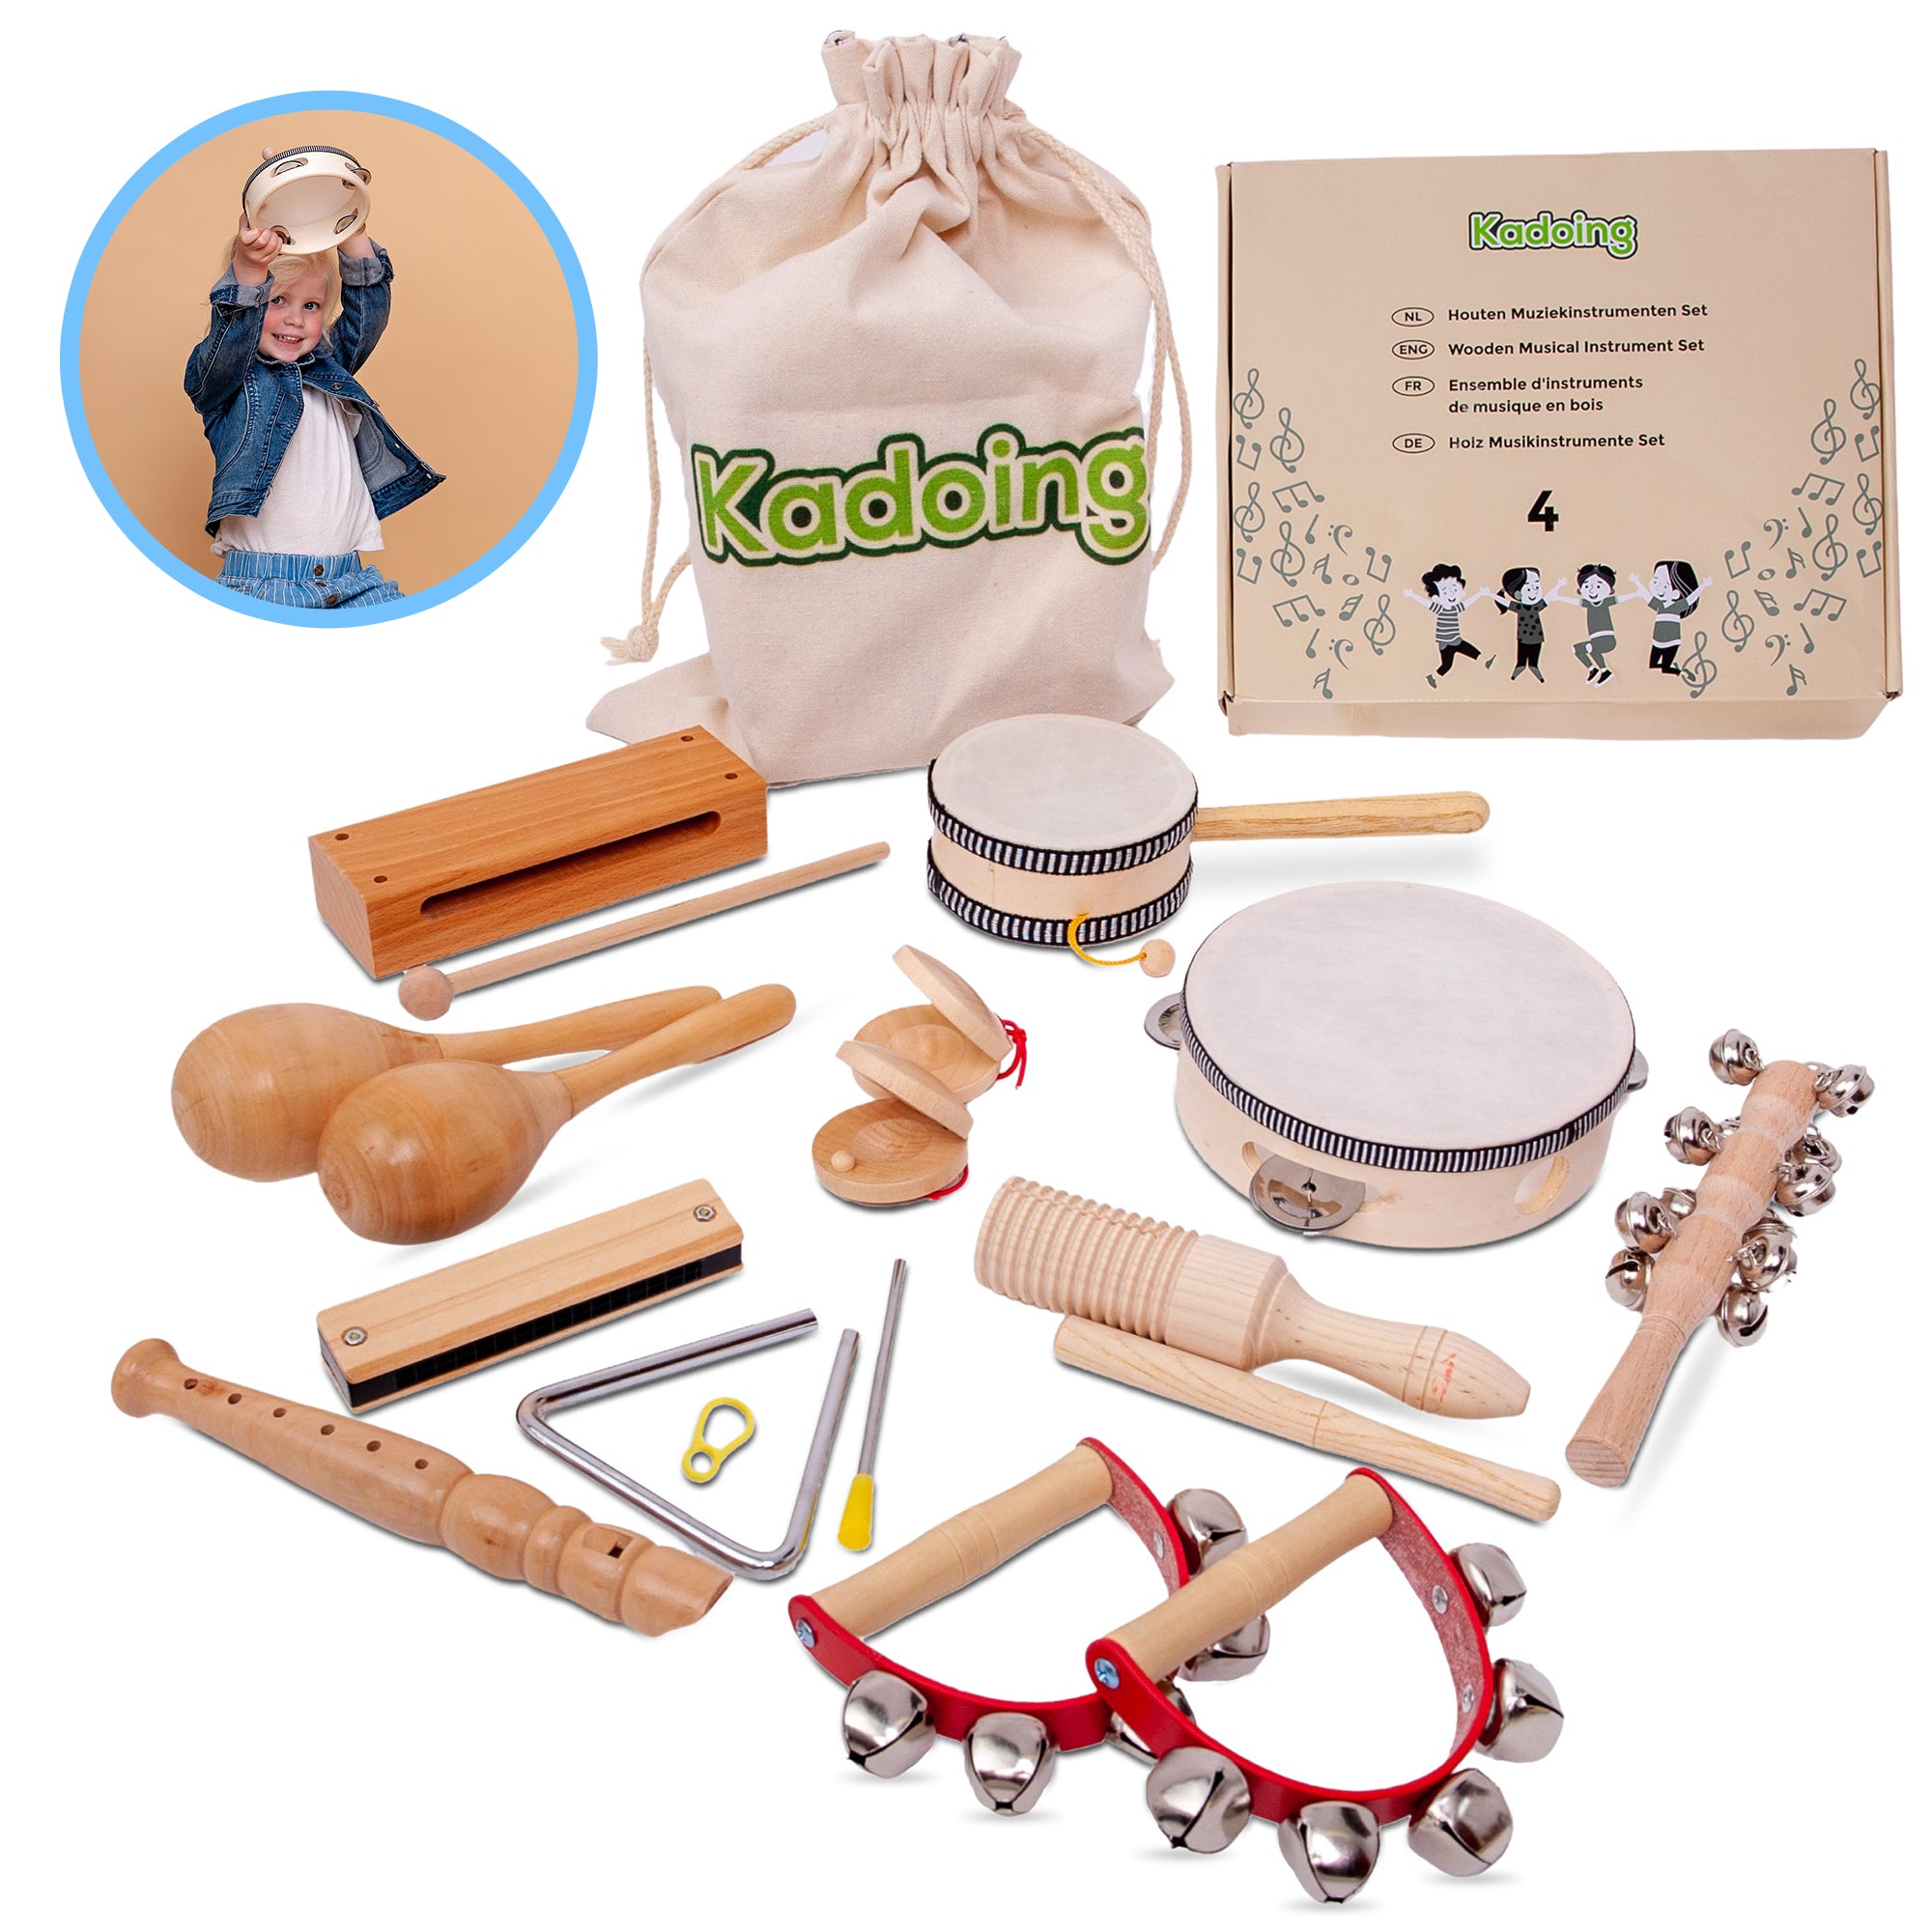 Conjunto de instrumentos musicais de madeira de 18 peças da Kadoing. O melhor brinquedo infantil